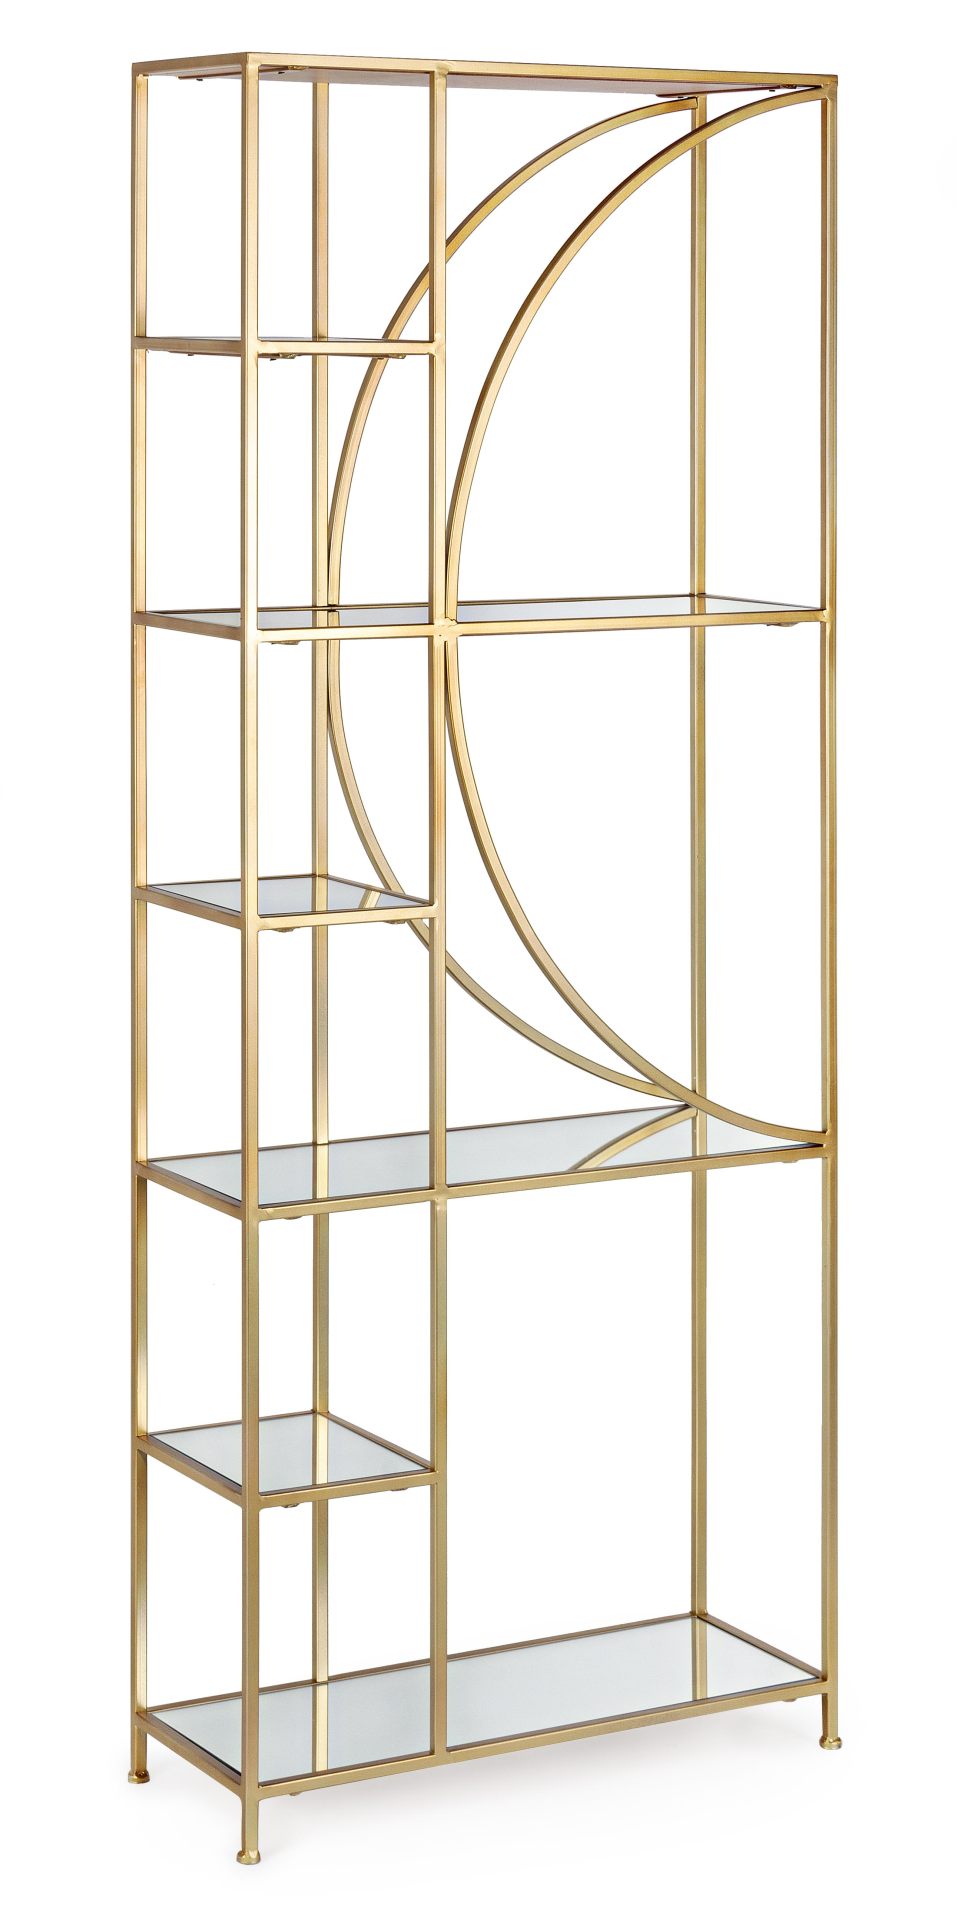 Das Regal Elenor überzeugt mit seinem klassischen Design. Gefertigt wurde es aus Glas. Das Gestell ist aus Metall und hat eine goldene Farbe. Das Regal verfügt über fünf Fächer. Die Breite beträgt 66 cm.